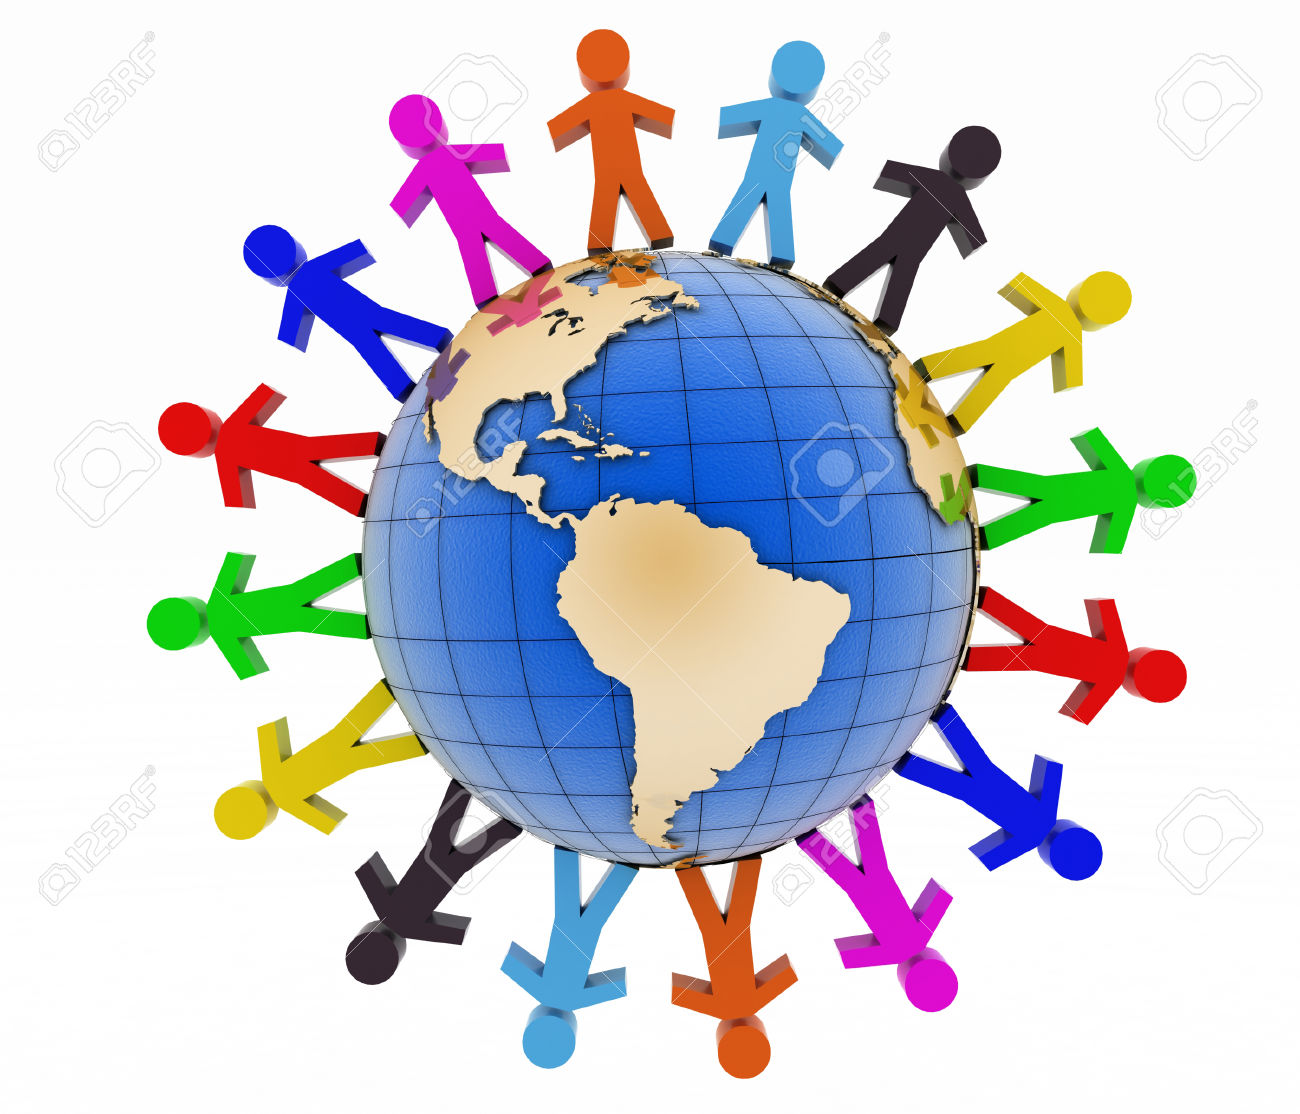 Global communication concept. World partnership. 3d image isolated on white background.